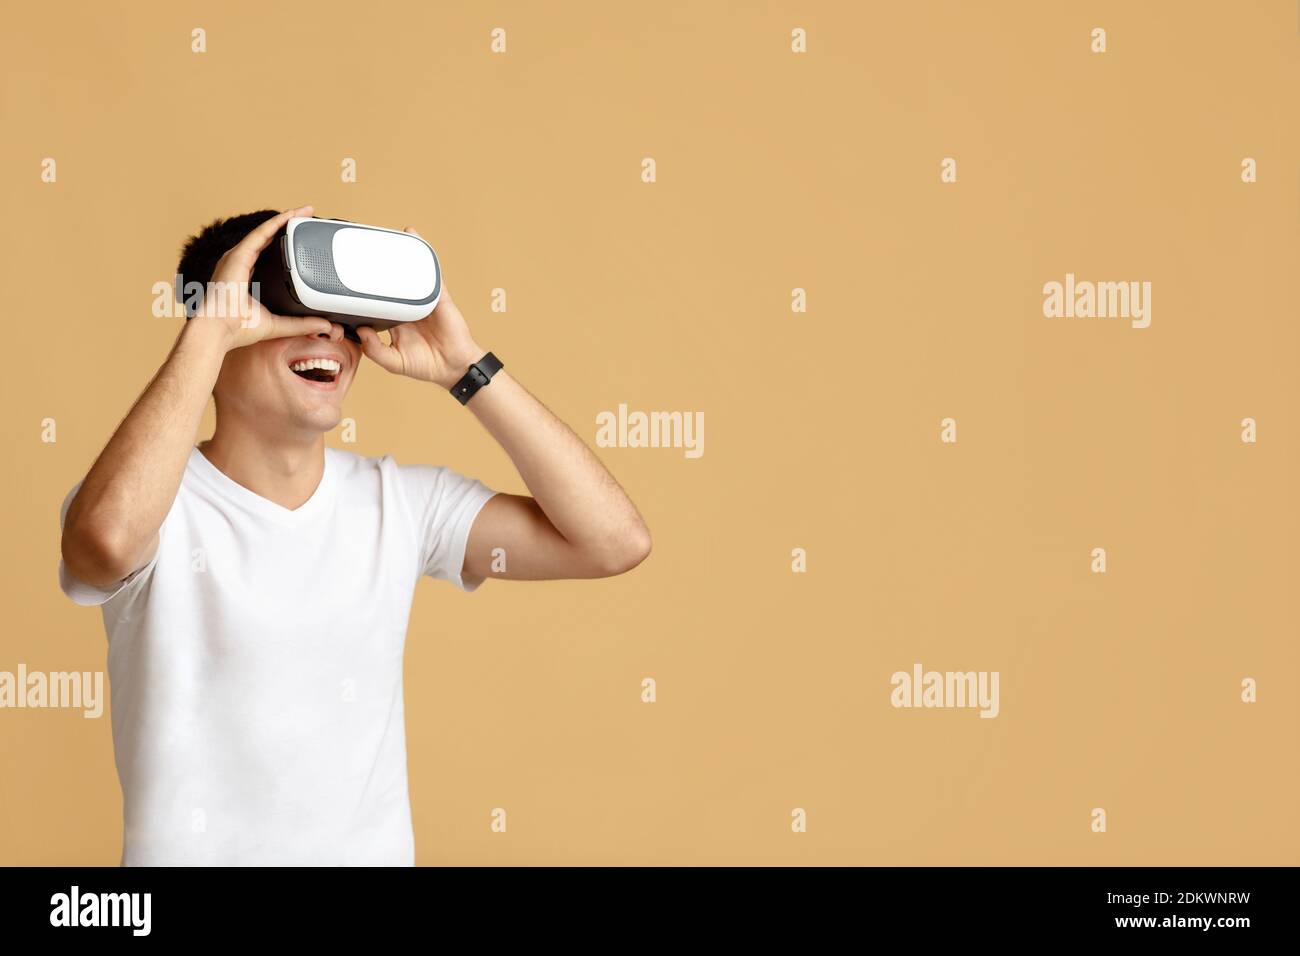 Gadget virtuali per l'intrattenimento, il lavoro, il tempo libero e lo studio Foto Stock